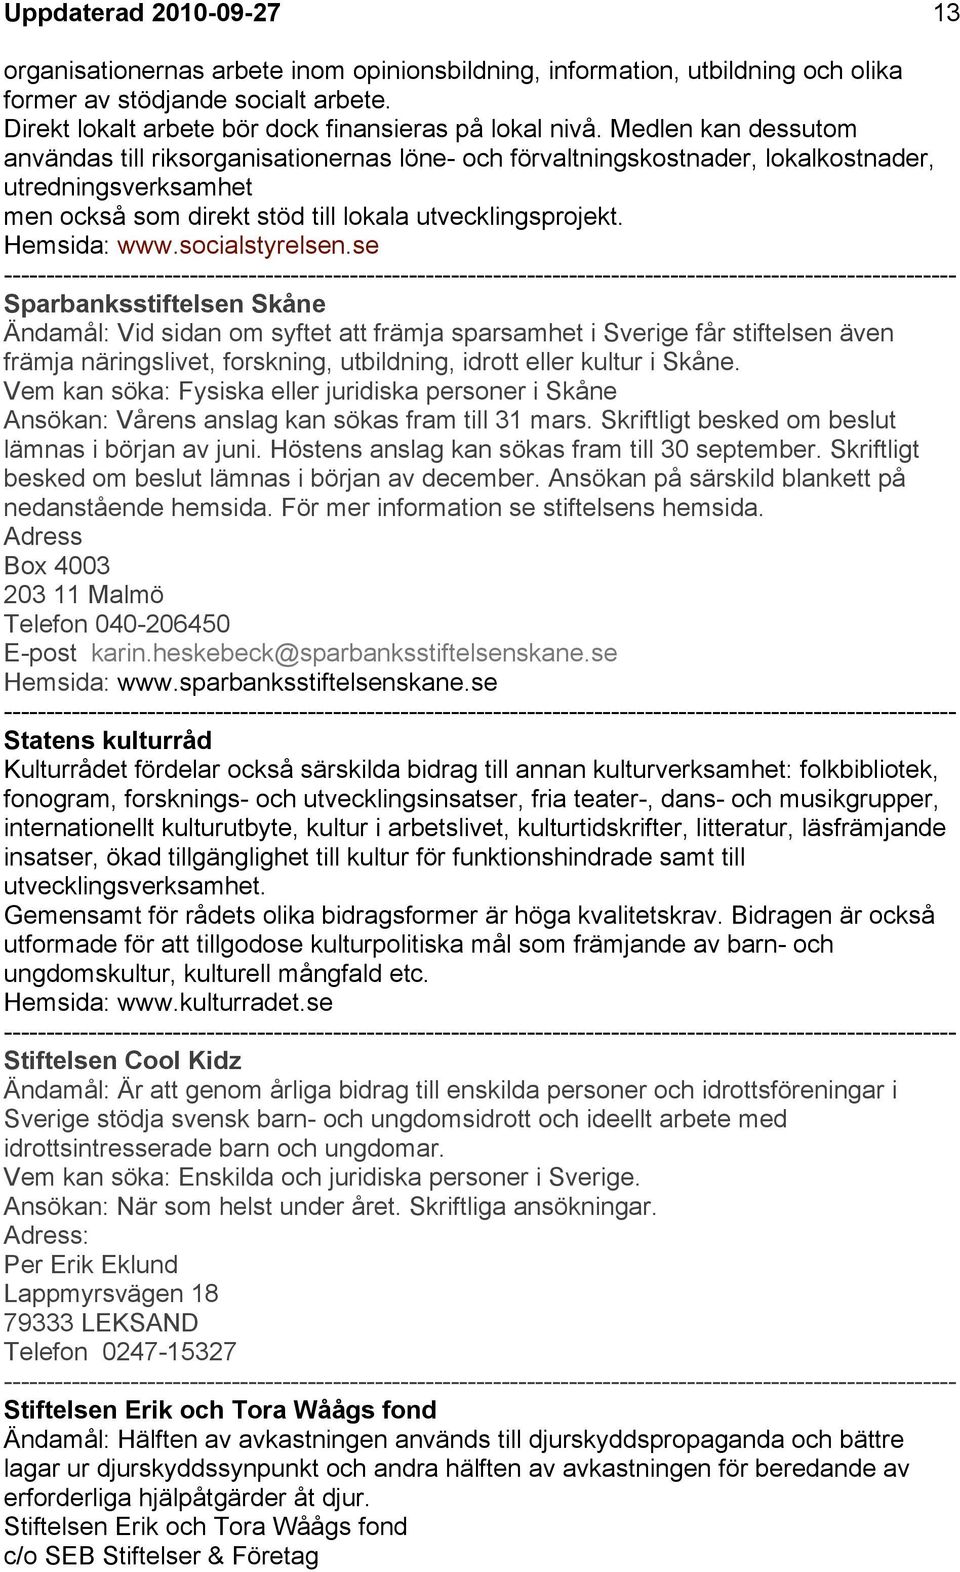 Kompendium med fonder och stiftelser för föreningar i Landskrona. - PDF  Gratis nedladdning